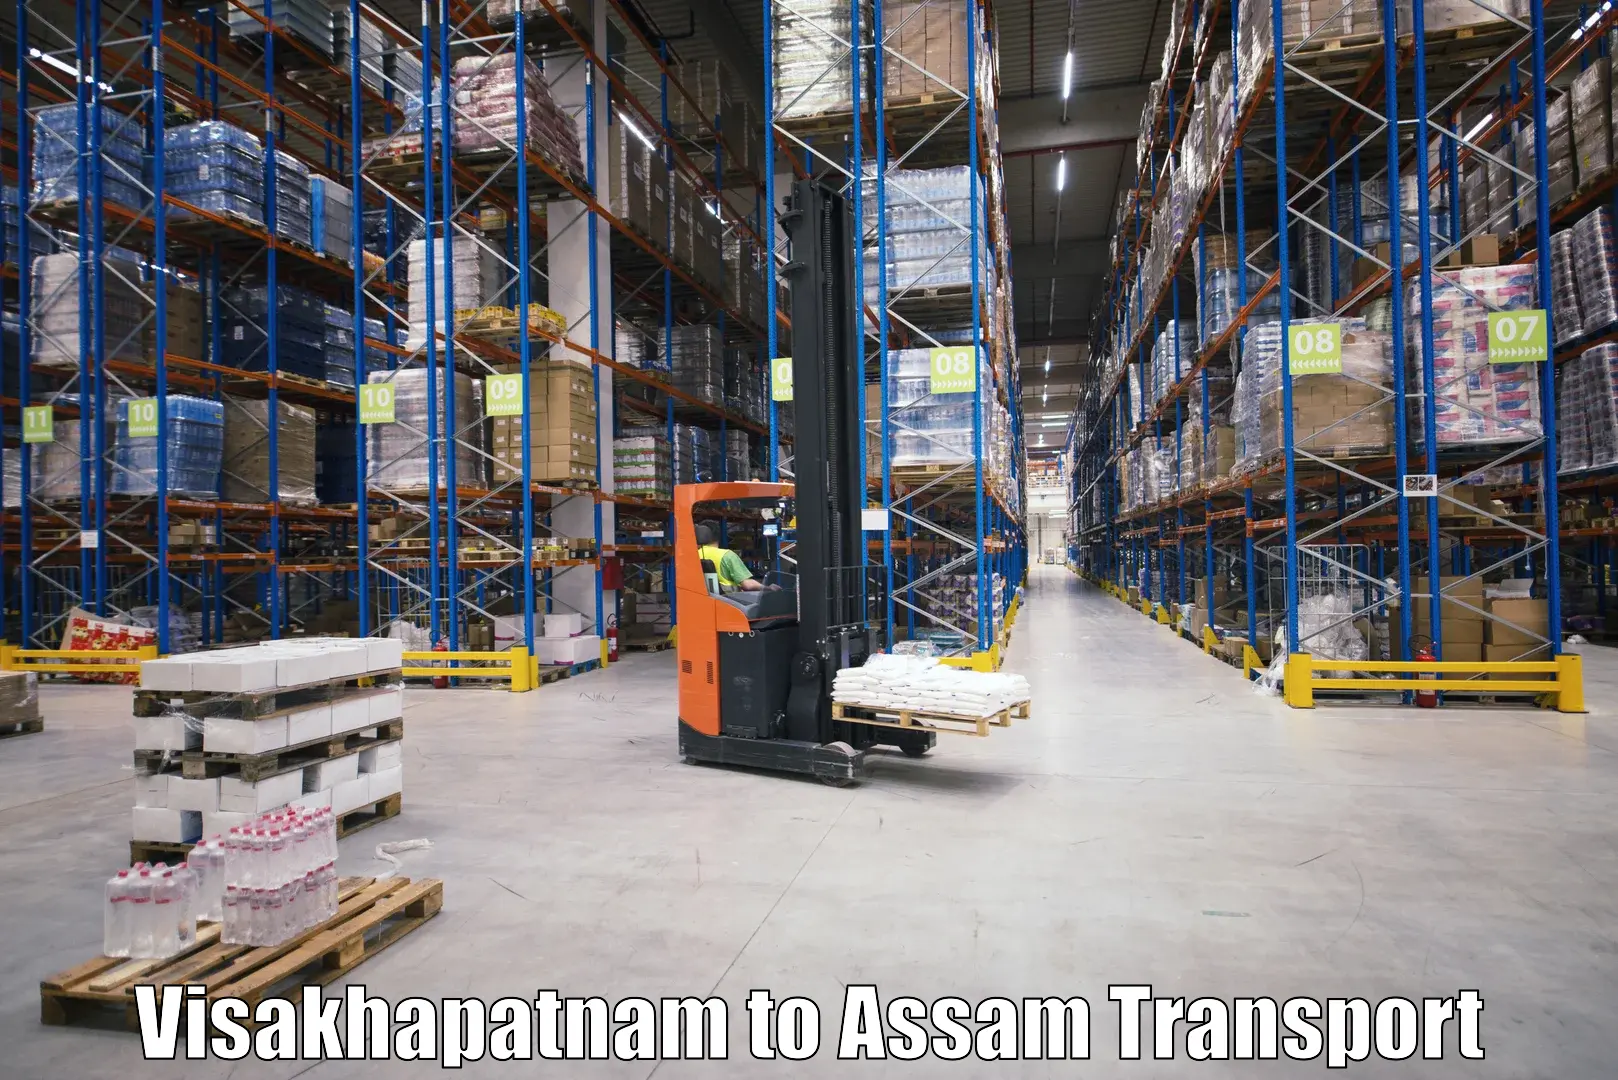 Commercial transport service Visakhapatnam to Dehurda